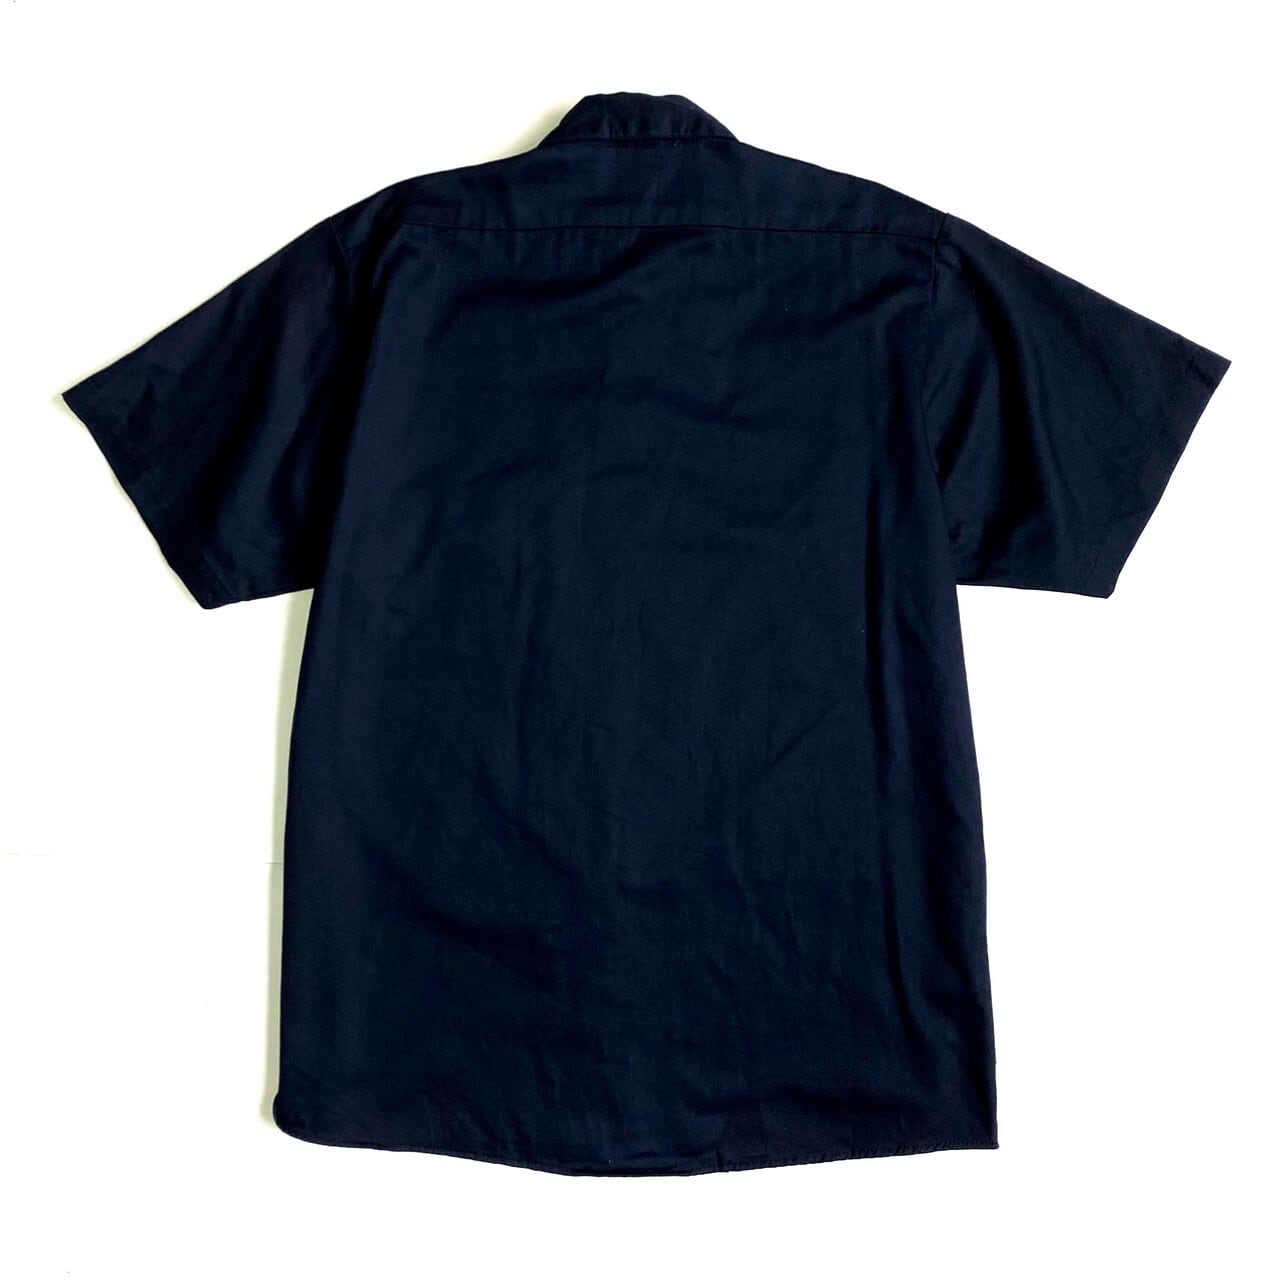 シンタス USA製 ワンポイント刺繍 ワークジャケット XL ネイビー CiNTAS ジップアップ ブルゾン メンズ   【230413】